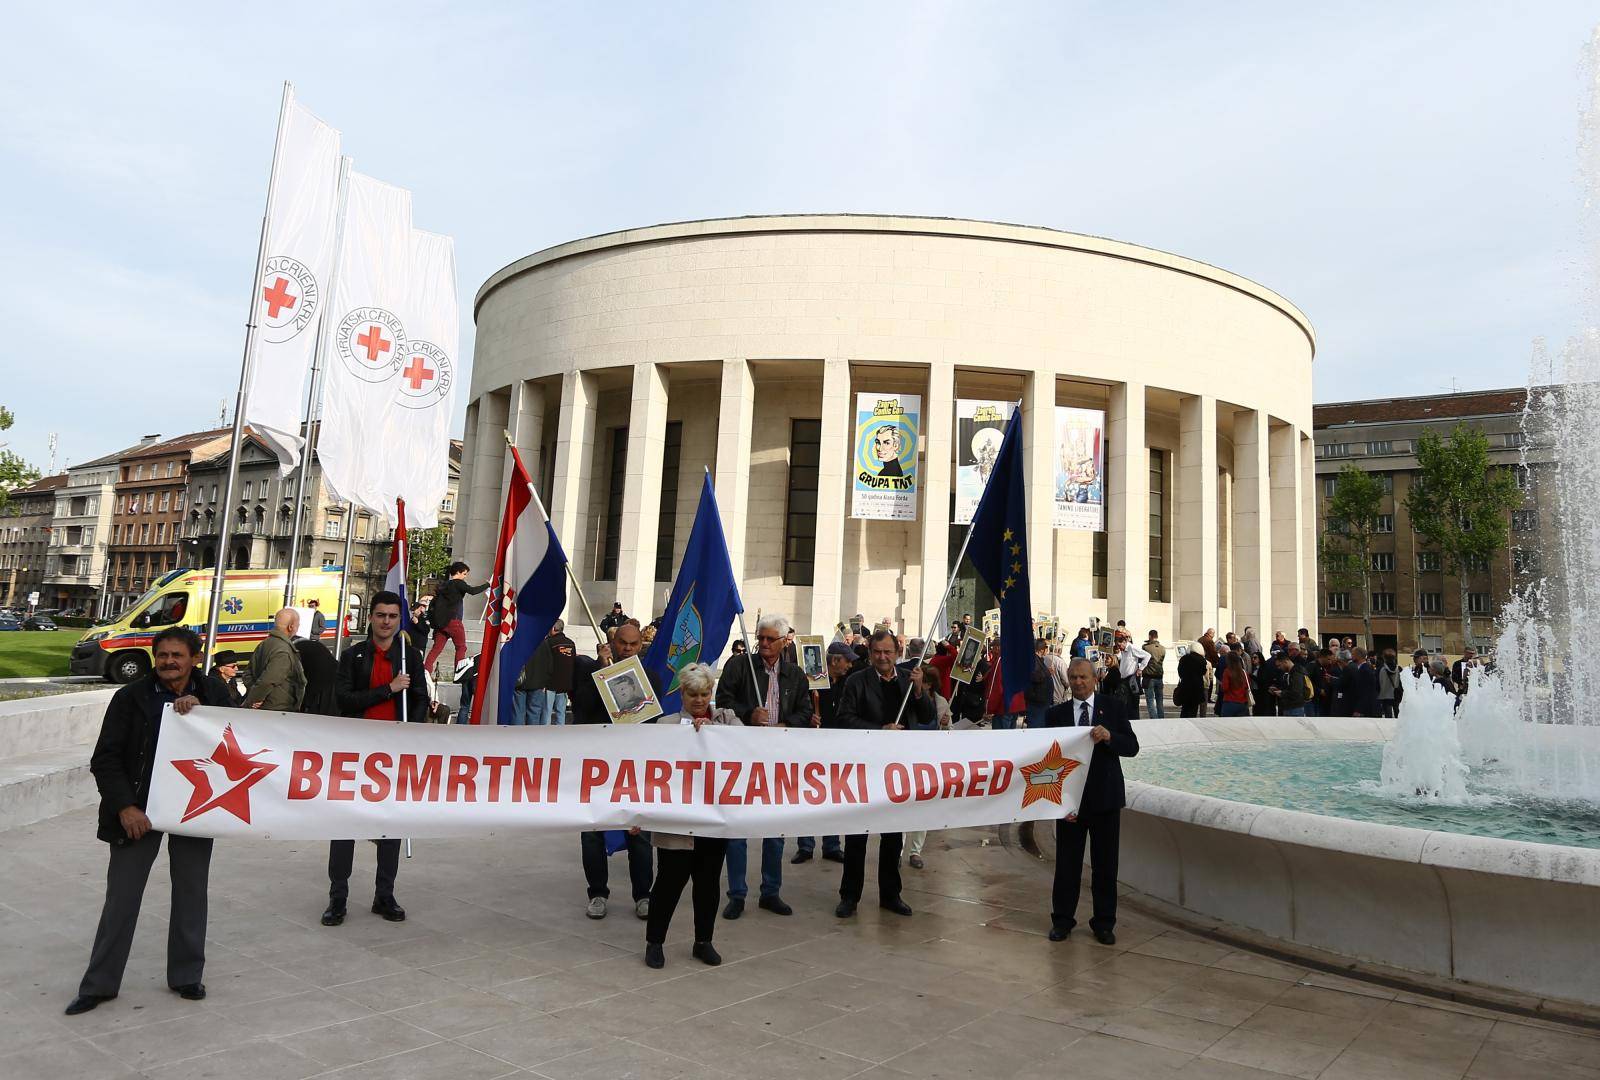 Zagreb: U srediÅ¡tu grada odrÅ¾an je mimohod Besmrtni partizanski odred